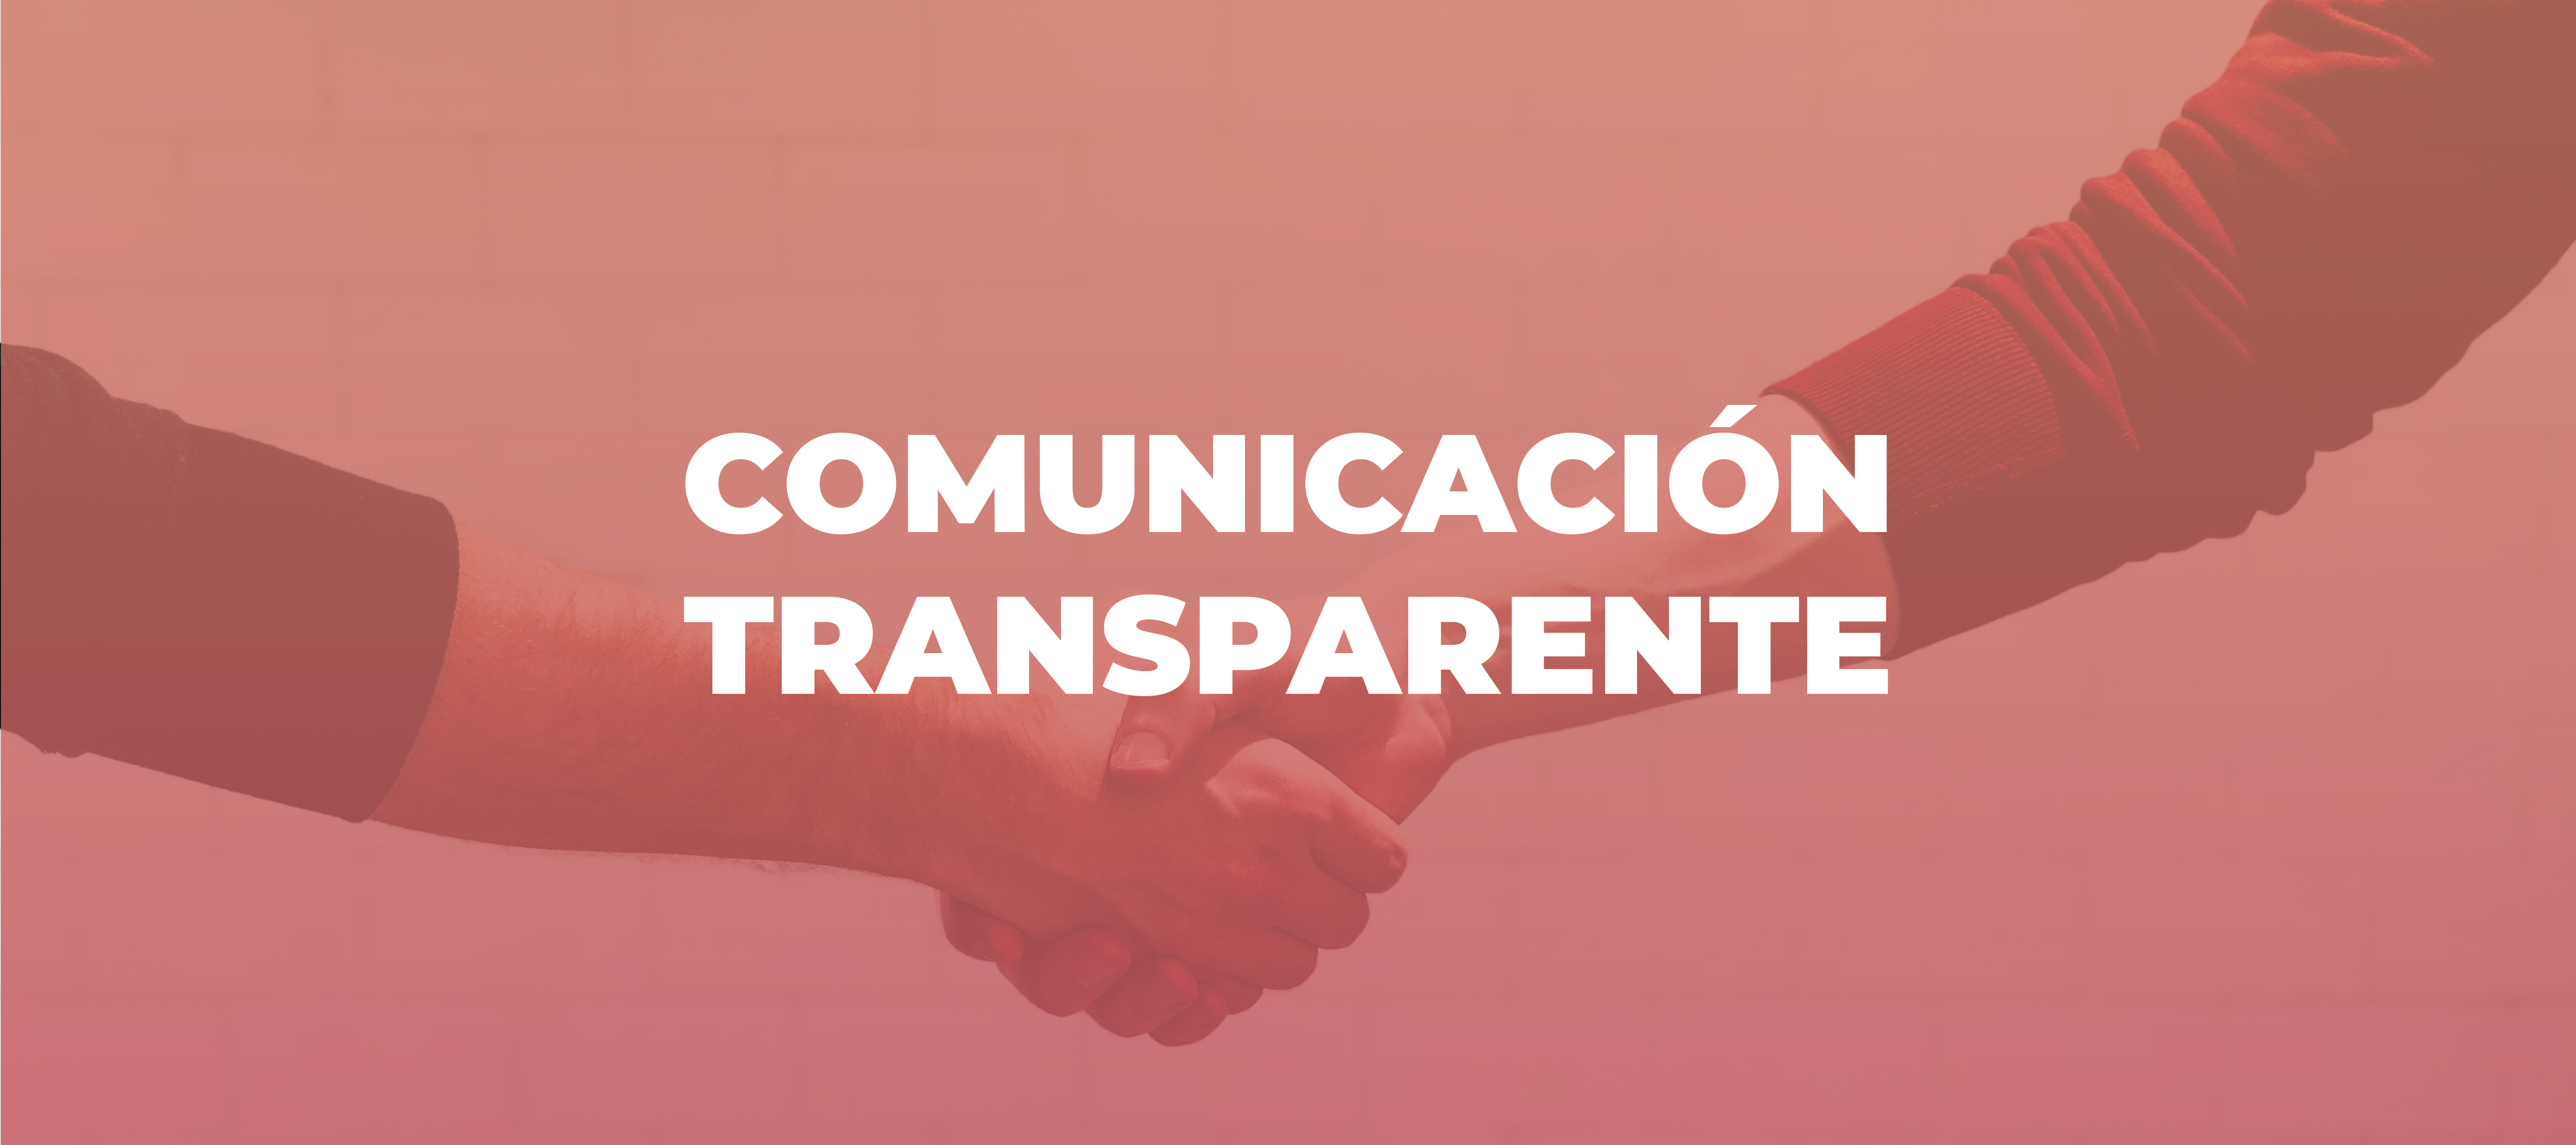 Comunicacio_n_transparente.jpg